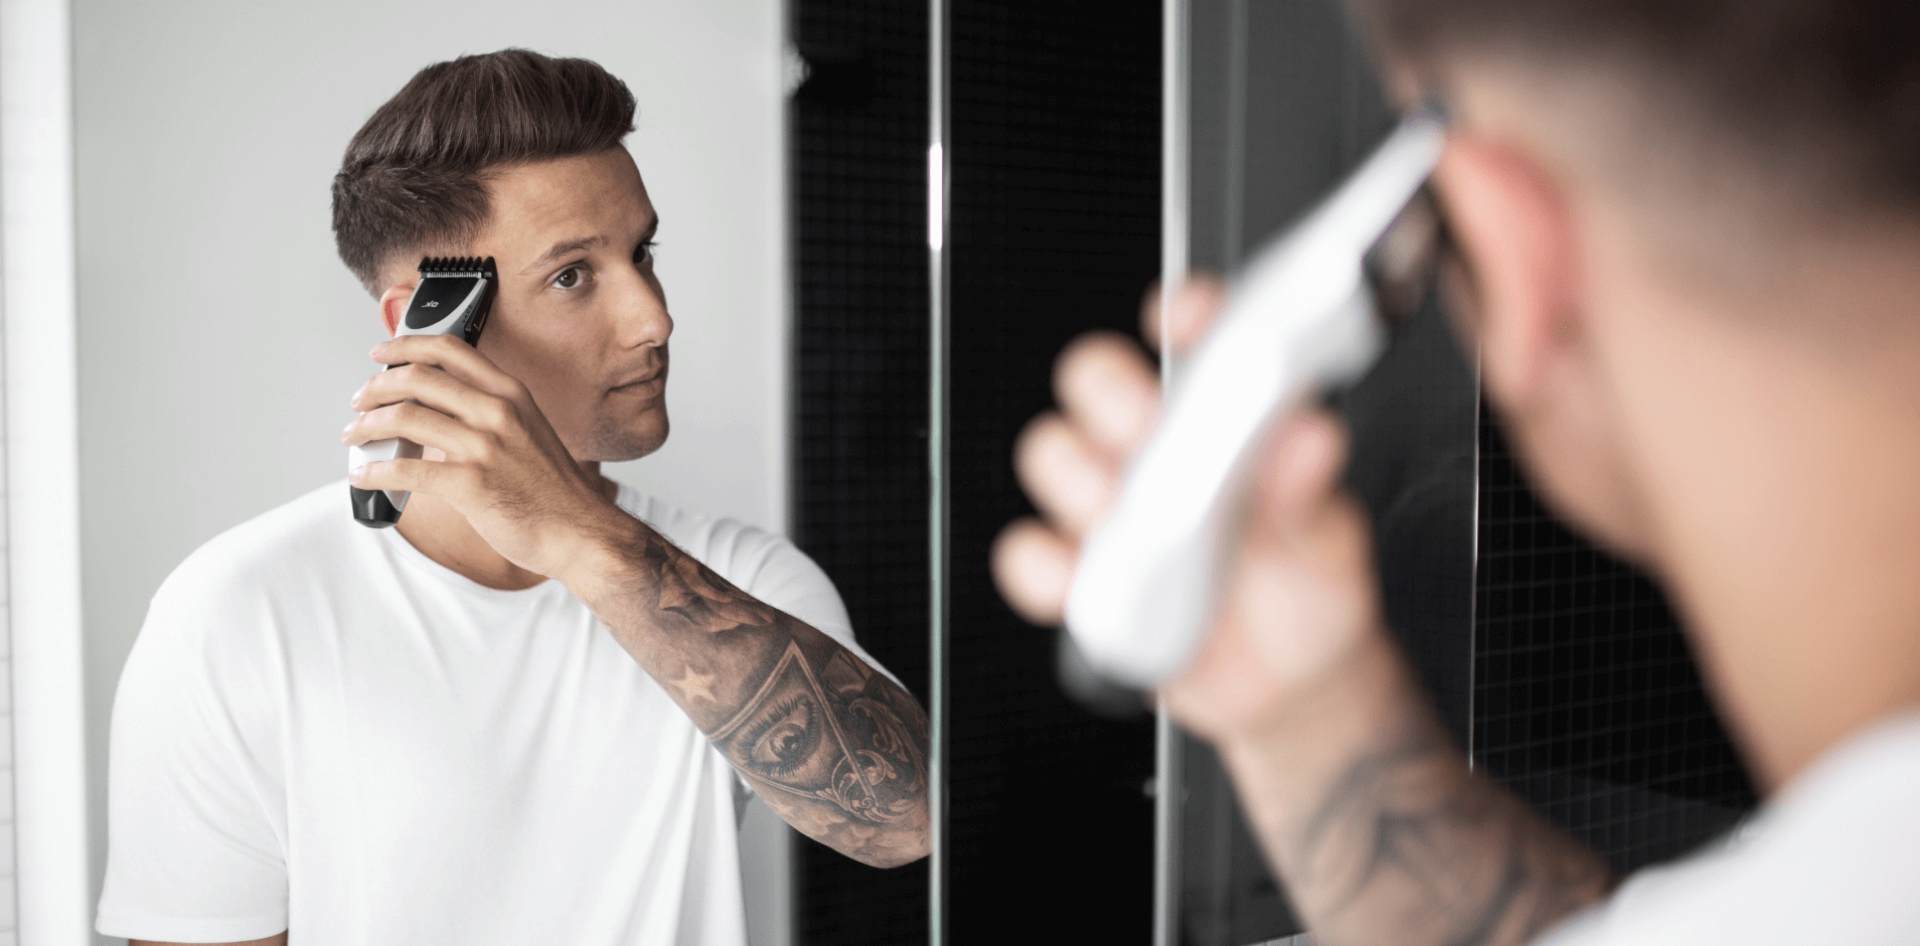 Un jeune homme avec tatouage au bras se coupe les cheveux devant un miroir avec une tondeuse de la marque ok., environnement de salle de bains moderne, gros plan